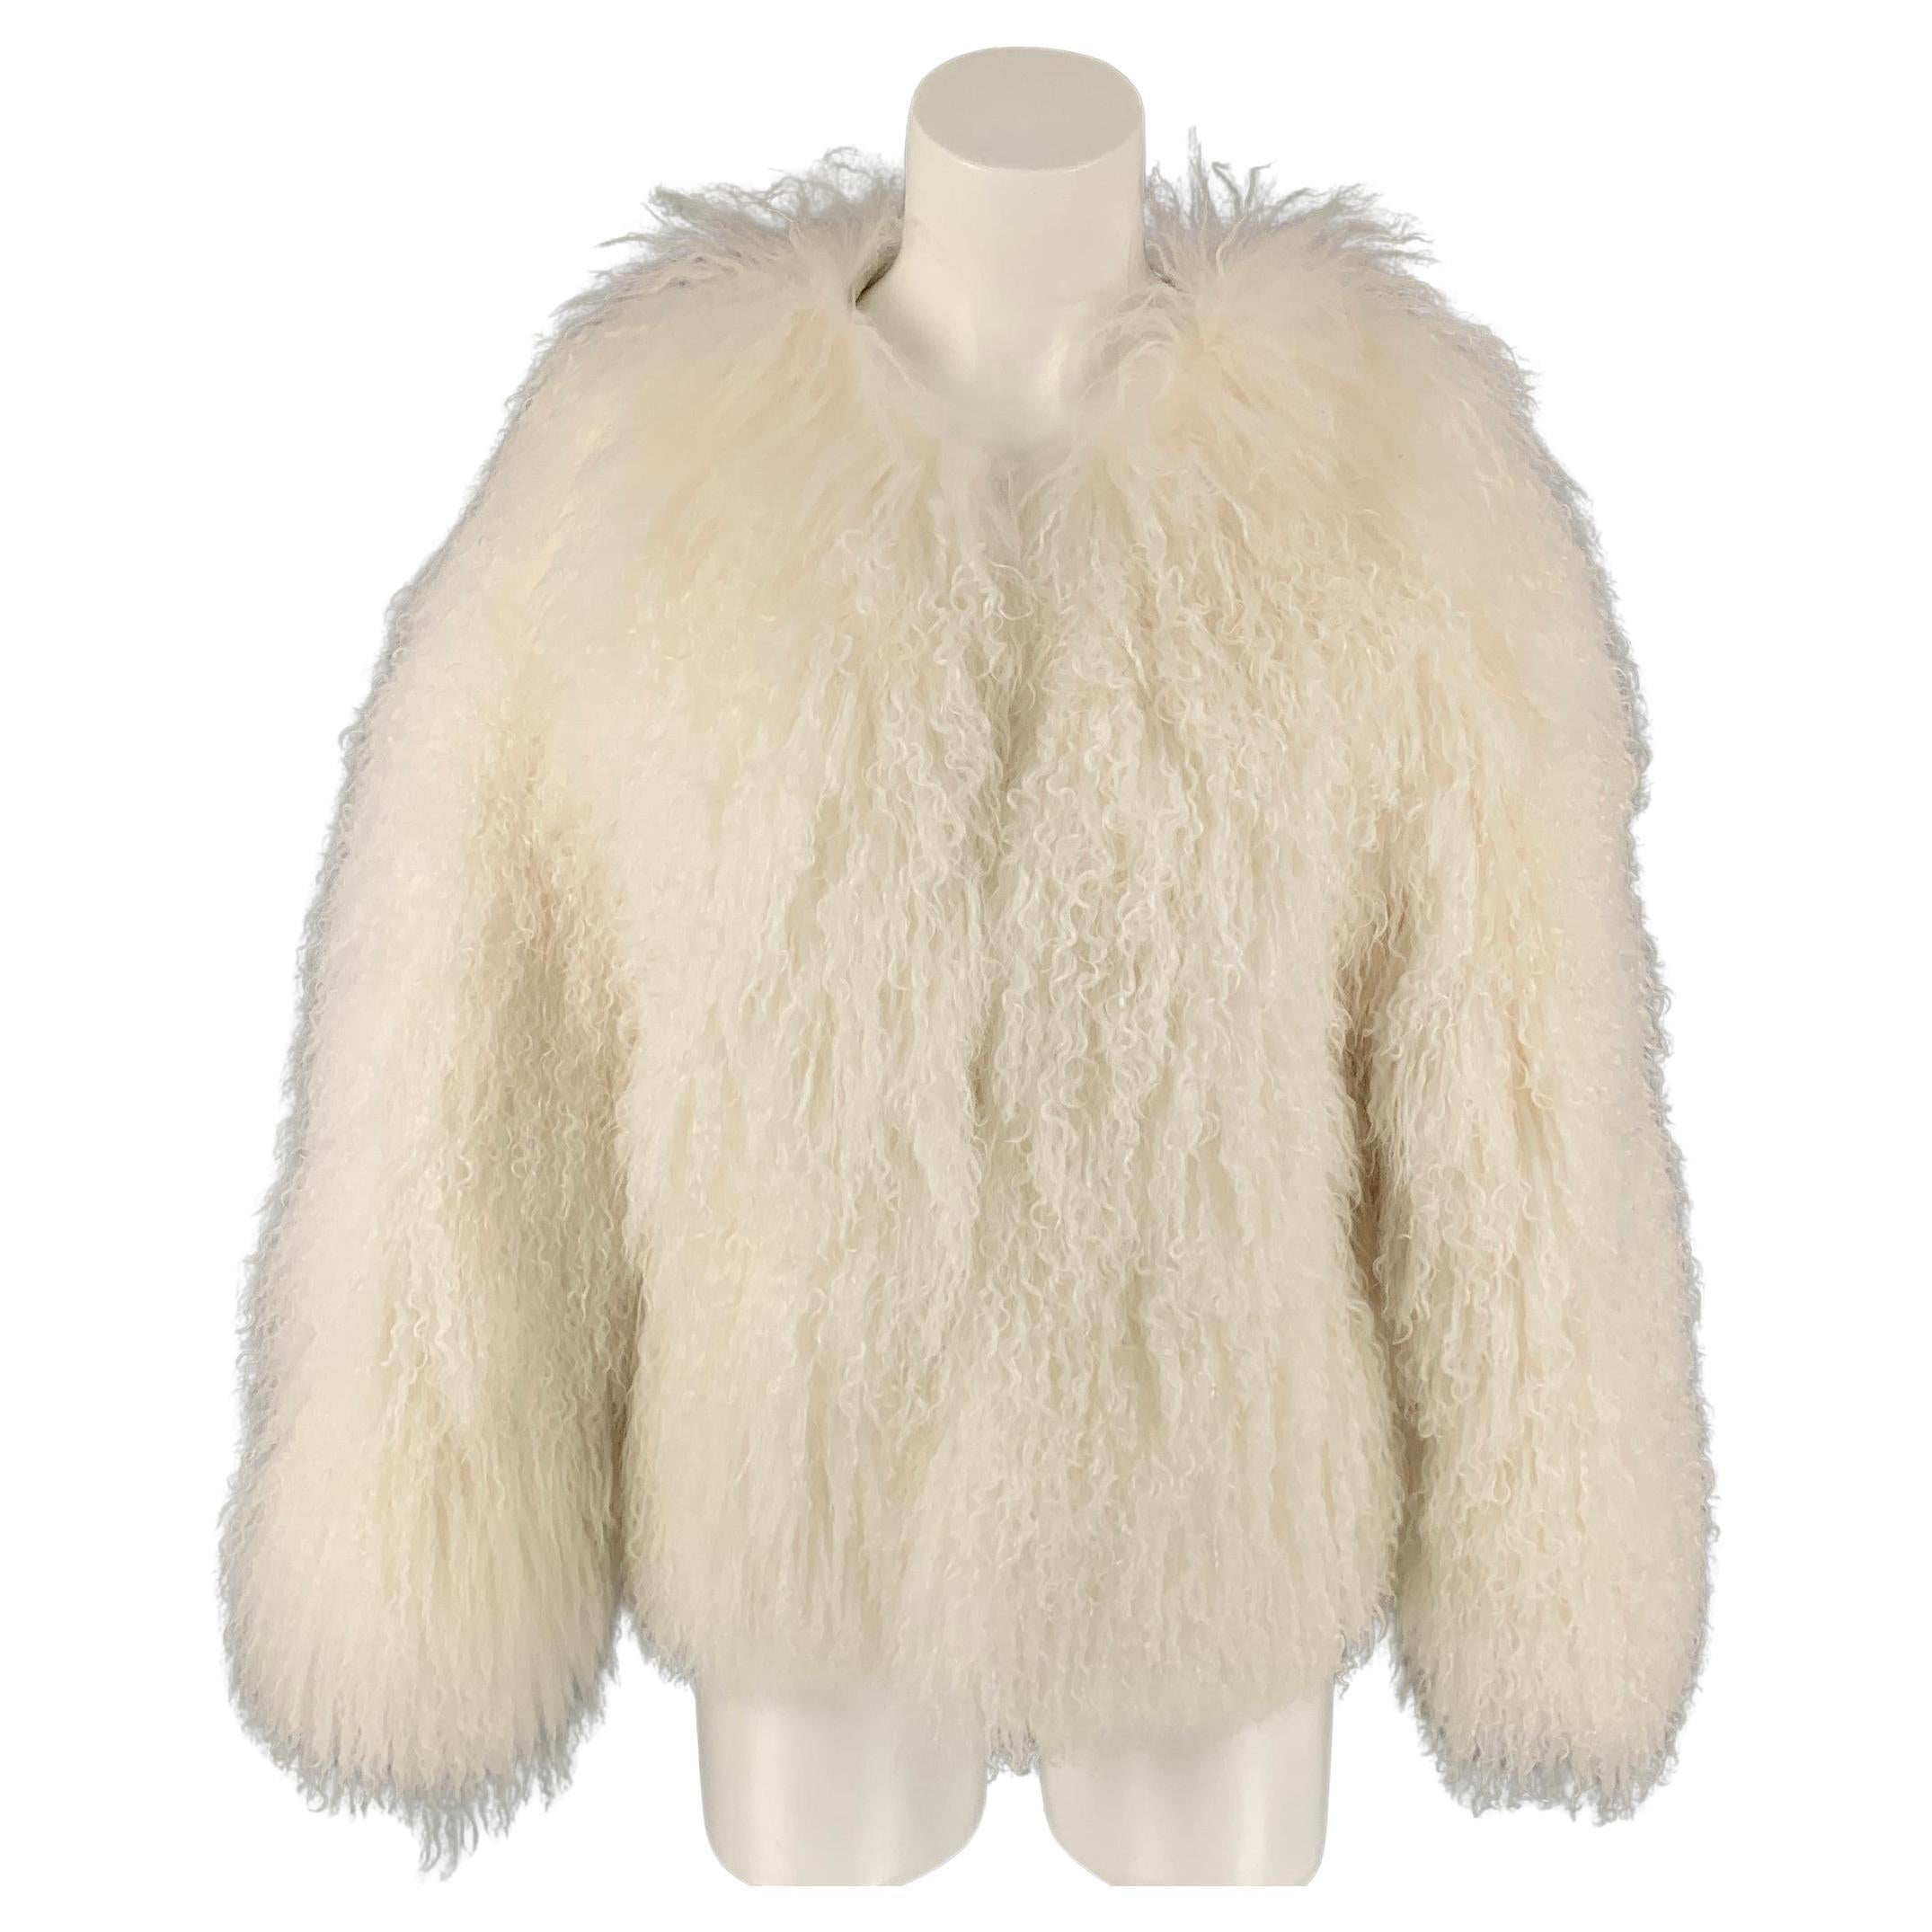 Vintage Mongolian Lamb Fur Coat Size S/M White Lamb Real Fur - Etsy